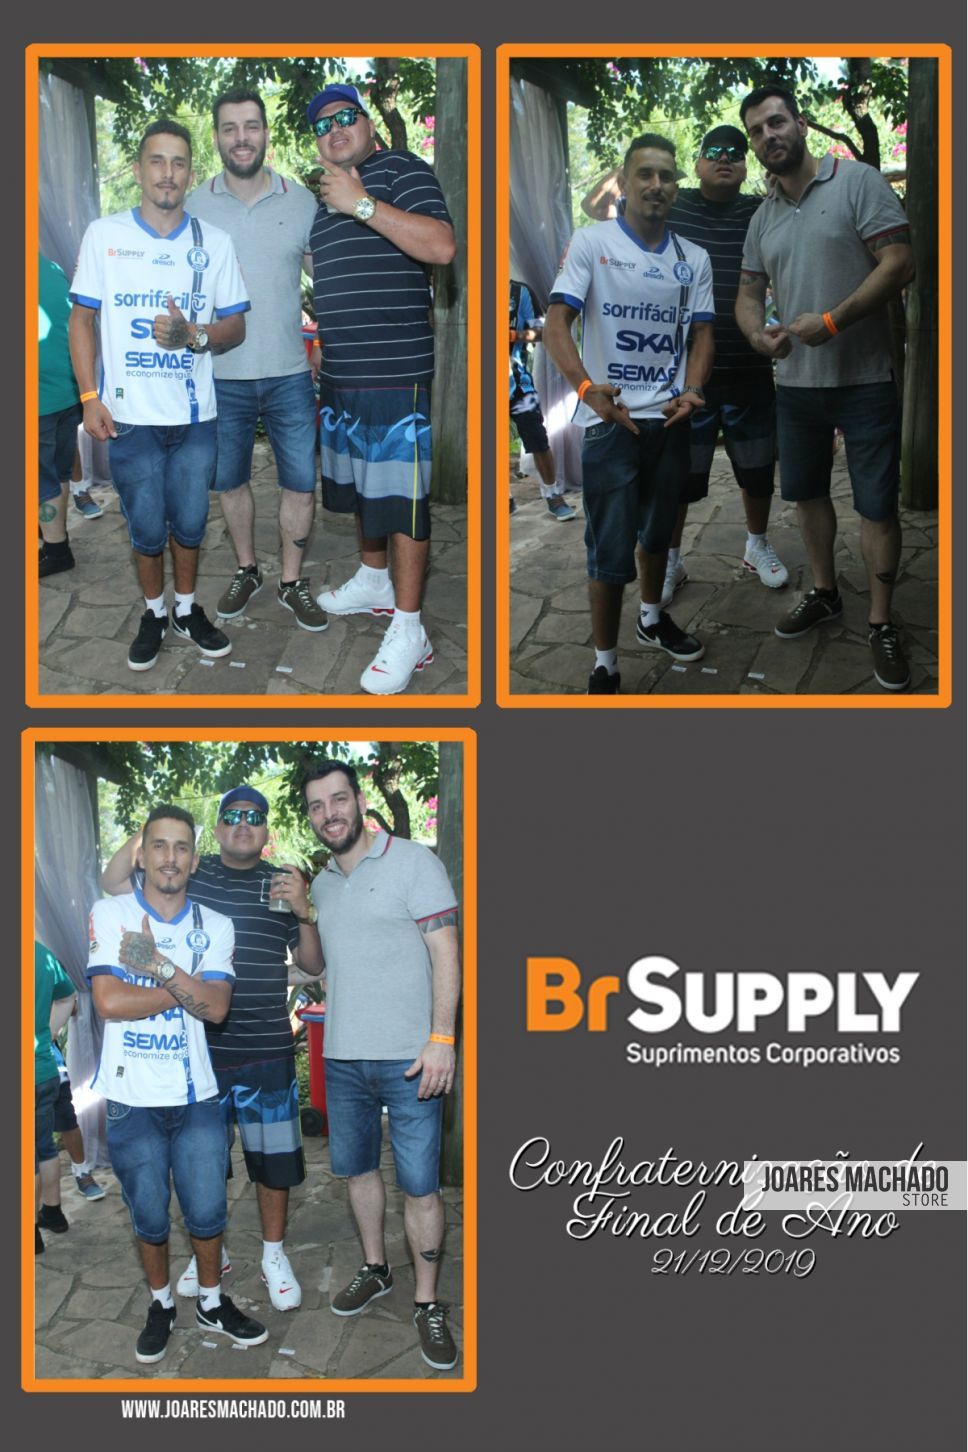 BR supply - confraternização 4500